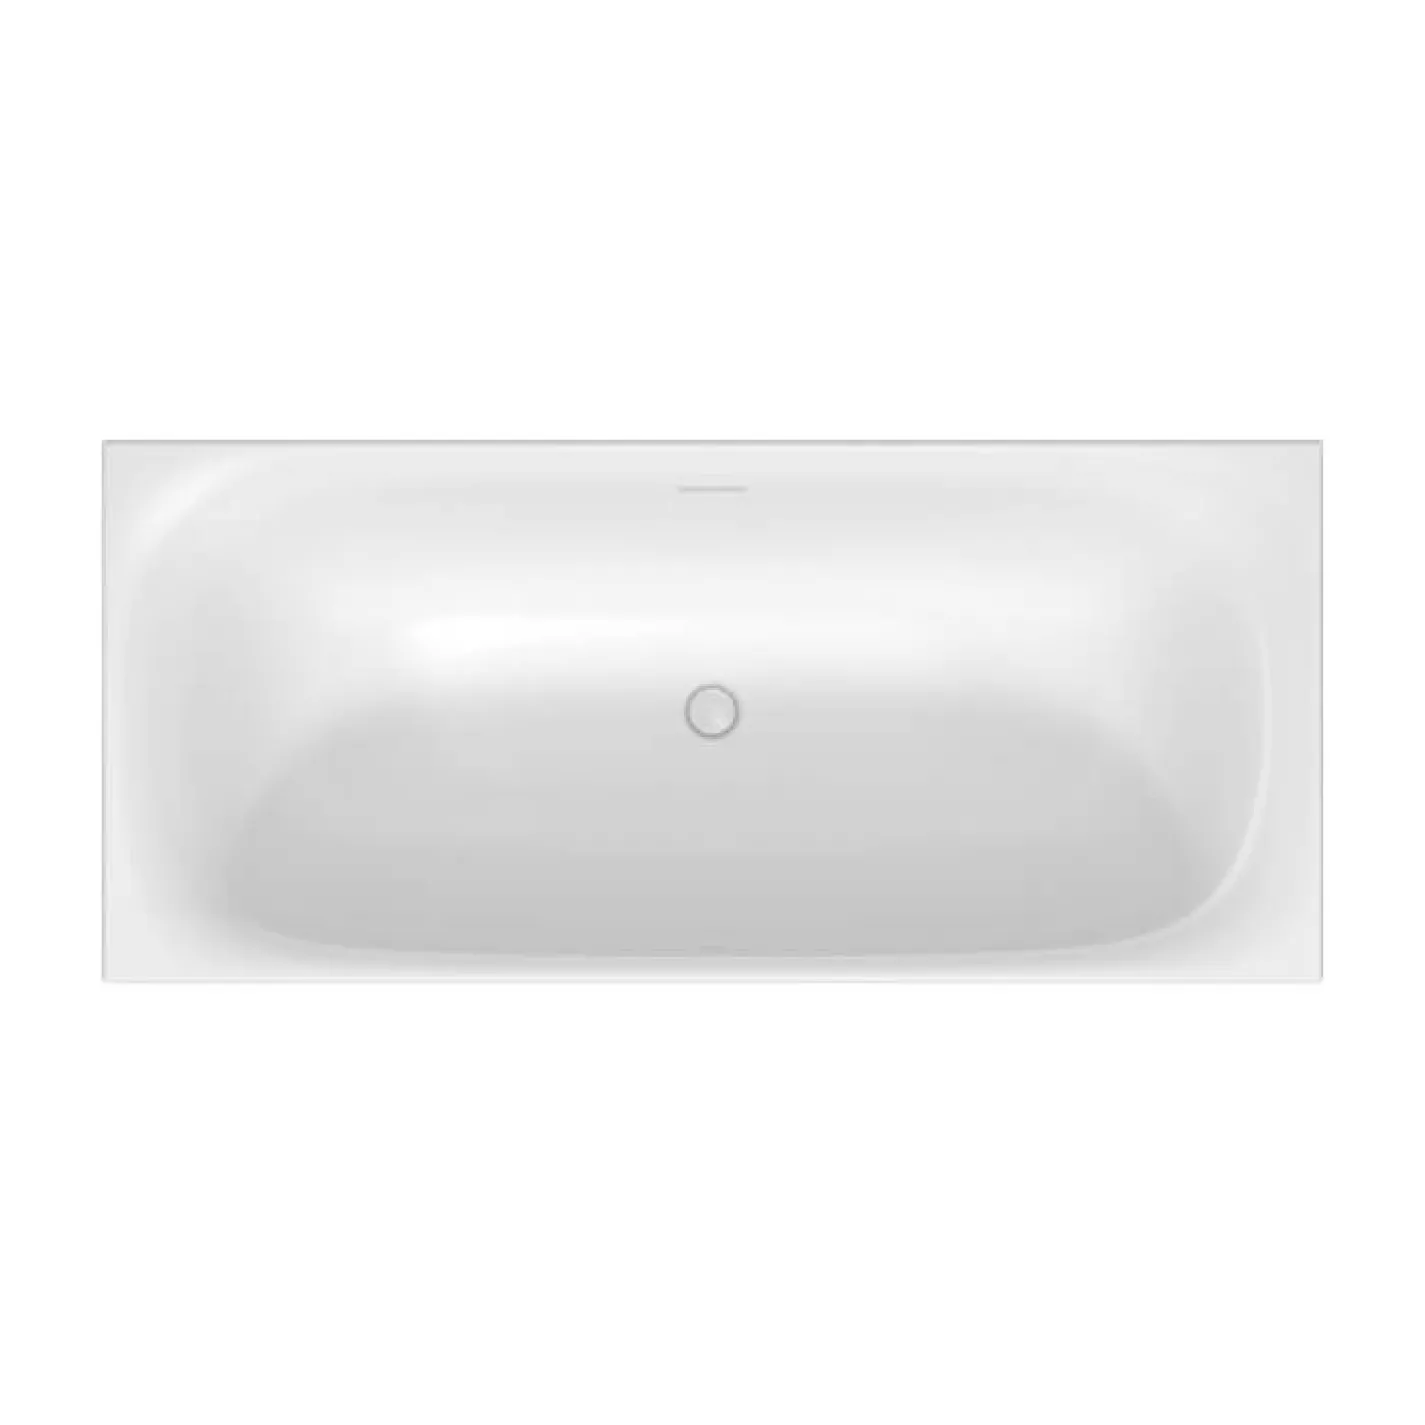 Ванна акриловая Duravit Xviu, свободностоящая 180x80 см, с меиллической рамой, шампань матовий (700443000B10000) - Фото 1